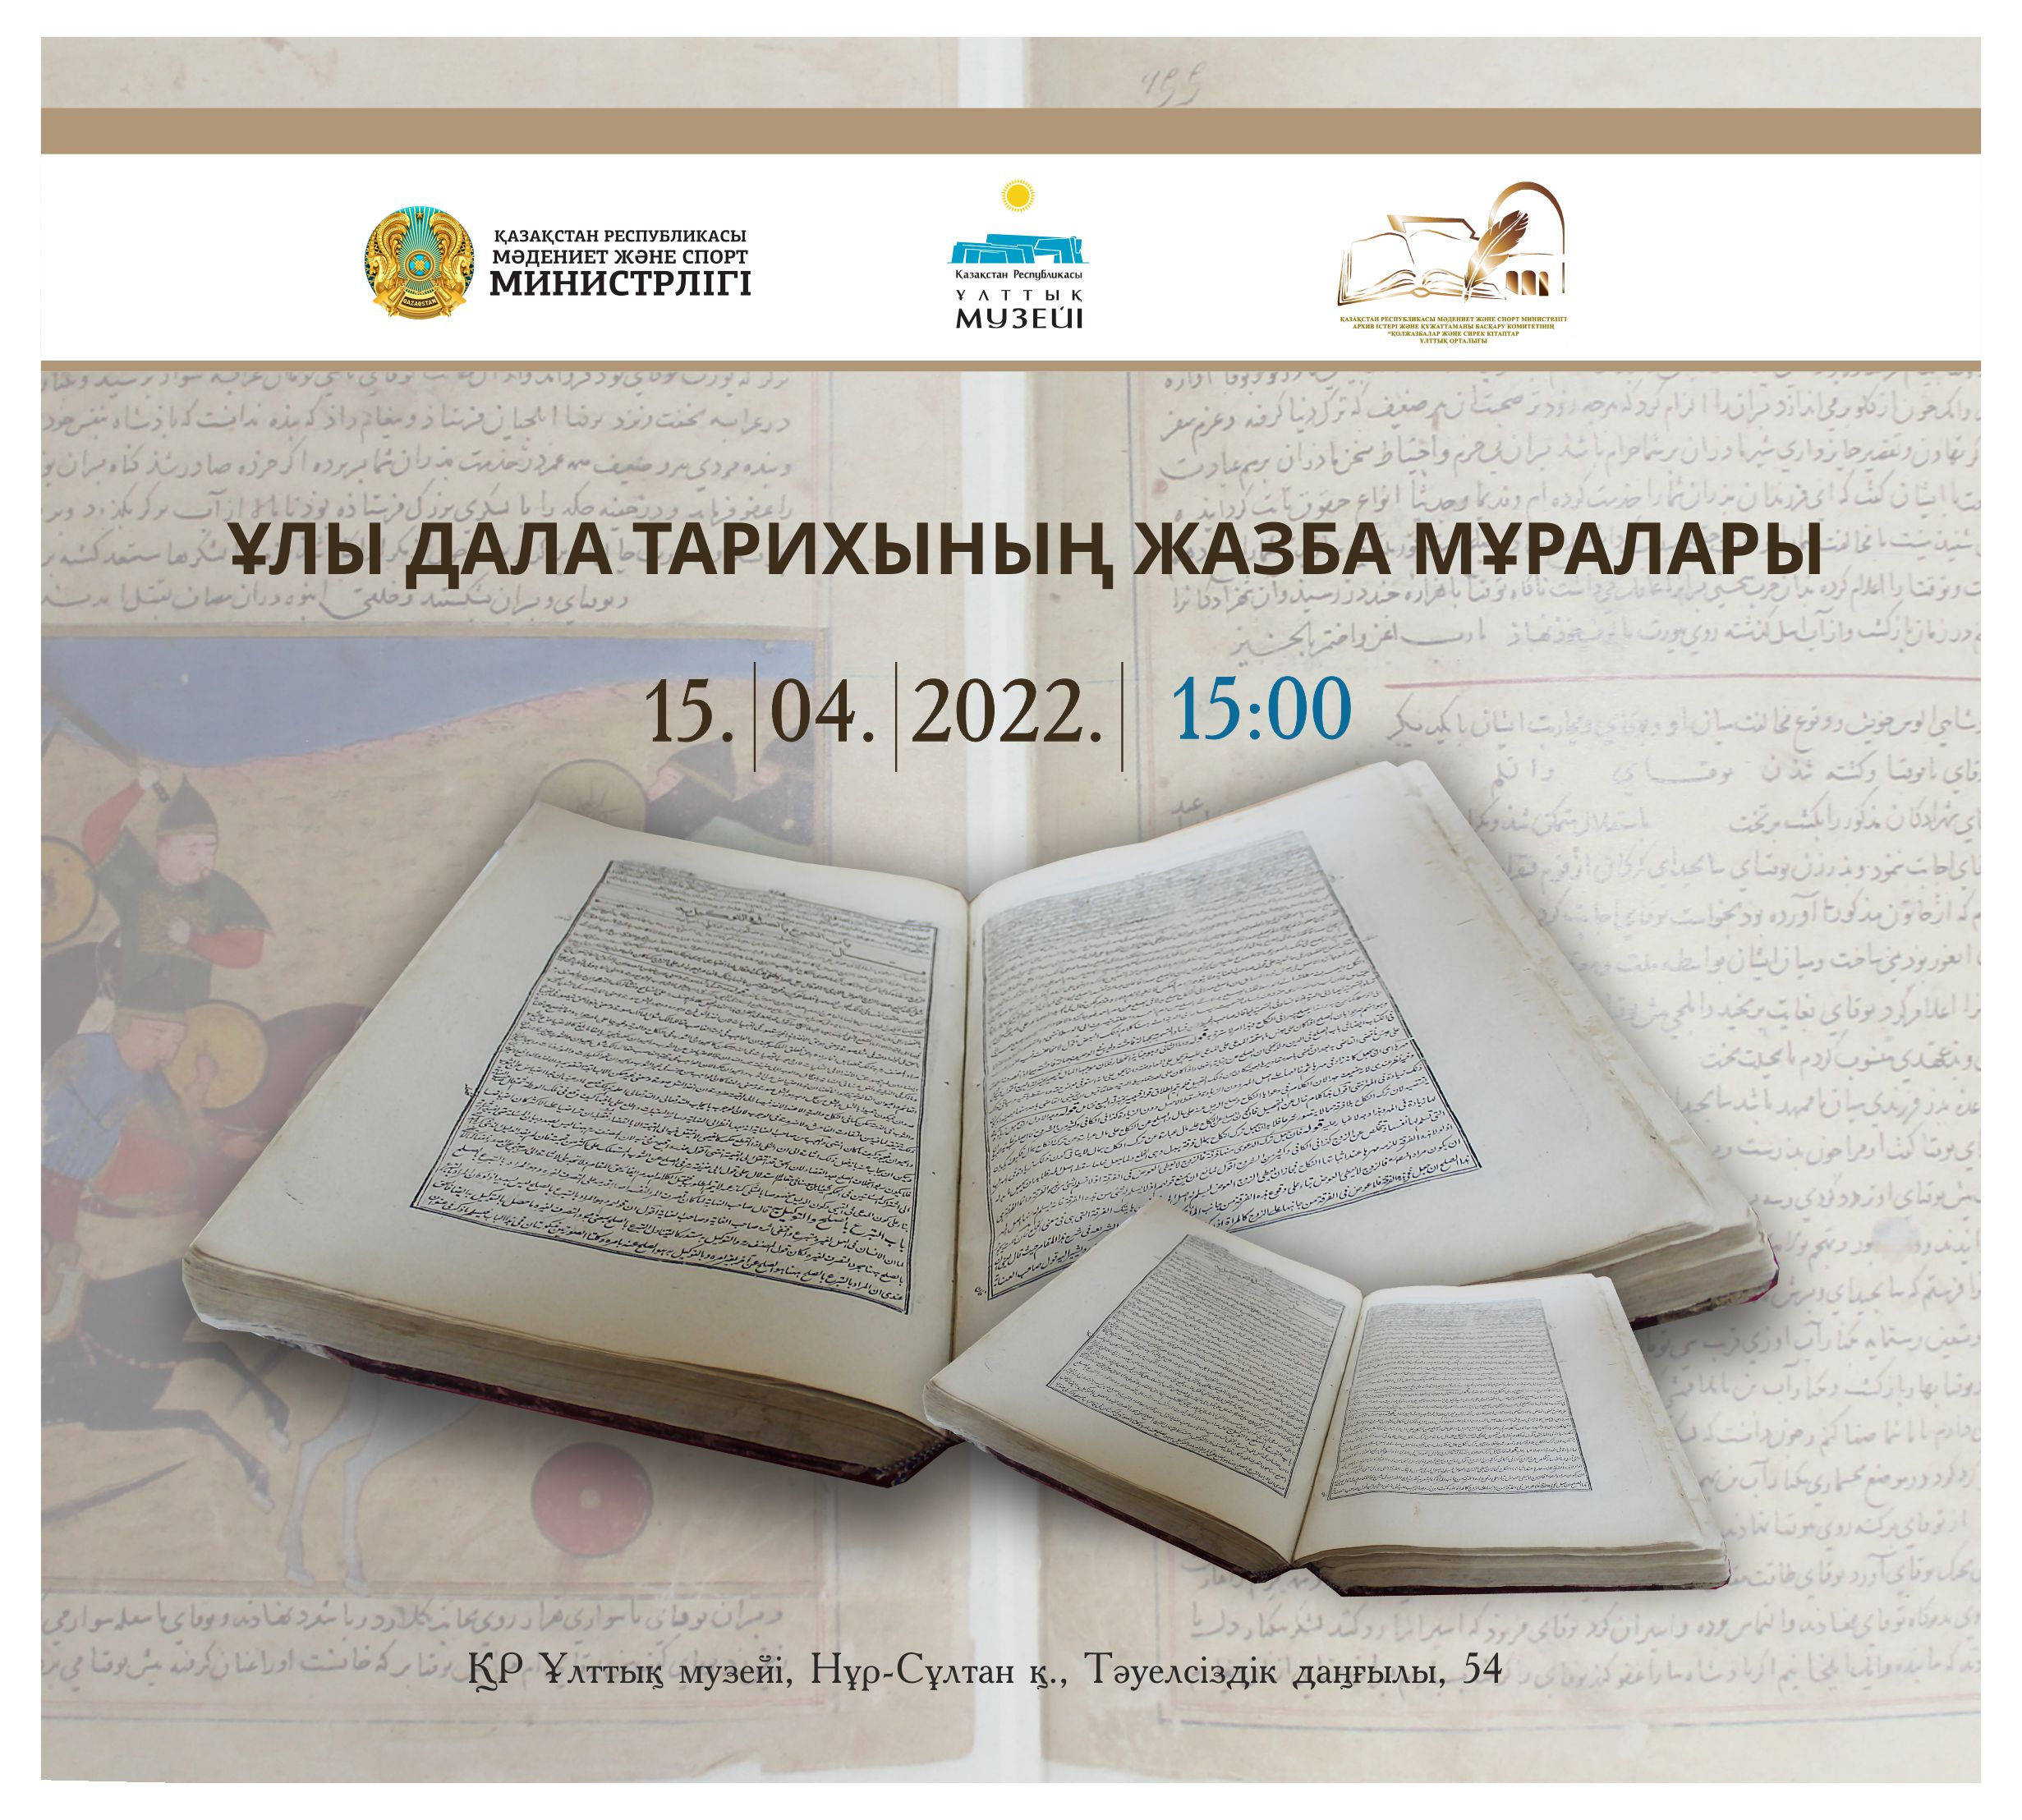  Открытие выставки «Письменное наследие истории Великой степи»